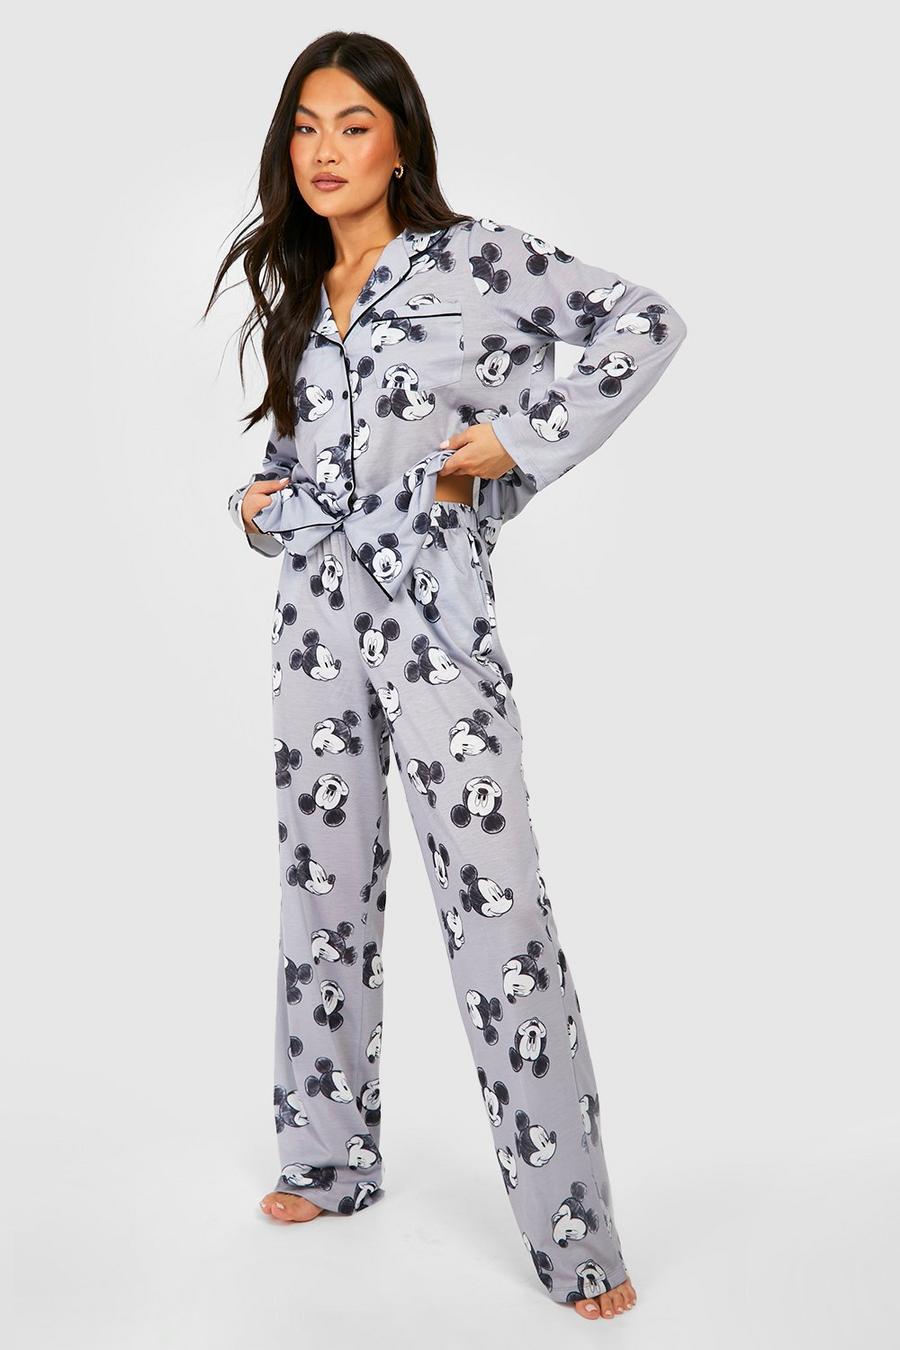 Pijama de Disney con pantalón largo, botones y estampado de Mickey Mouse, Grey gris